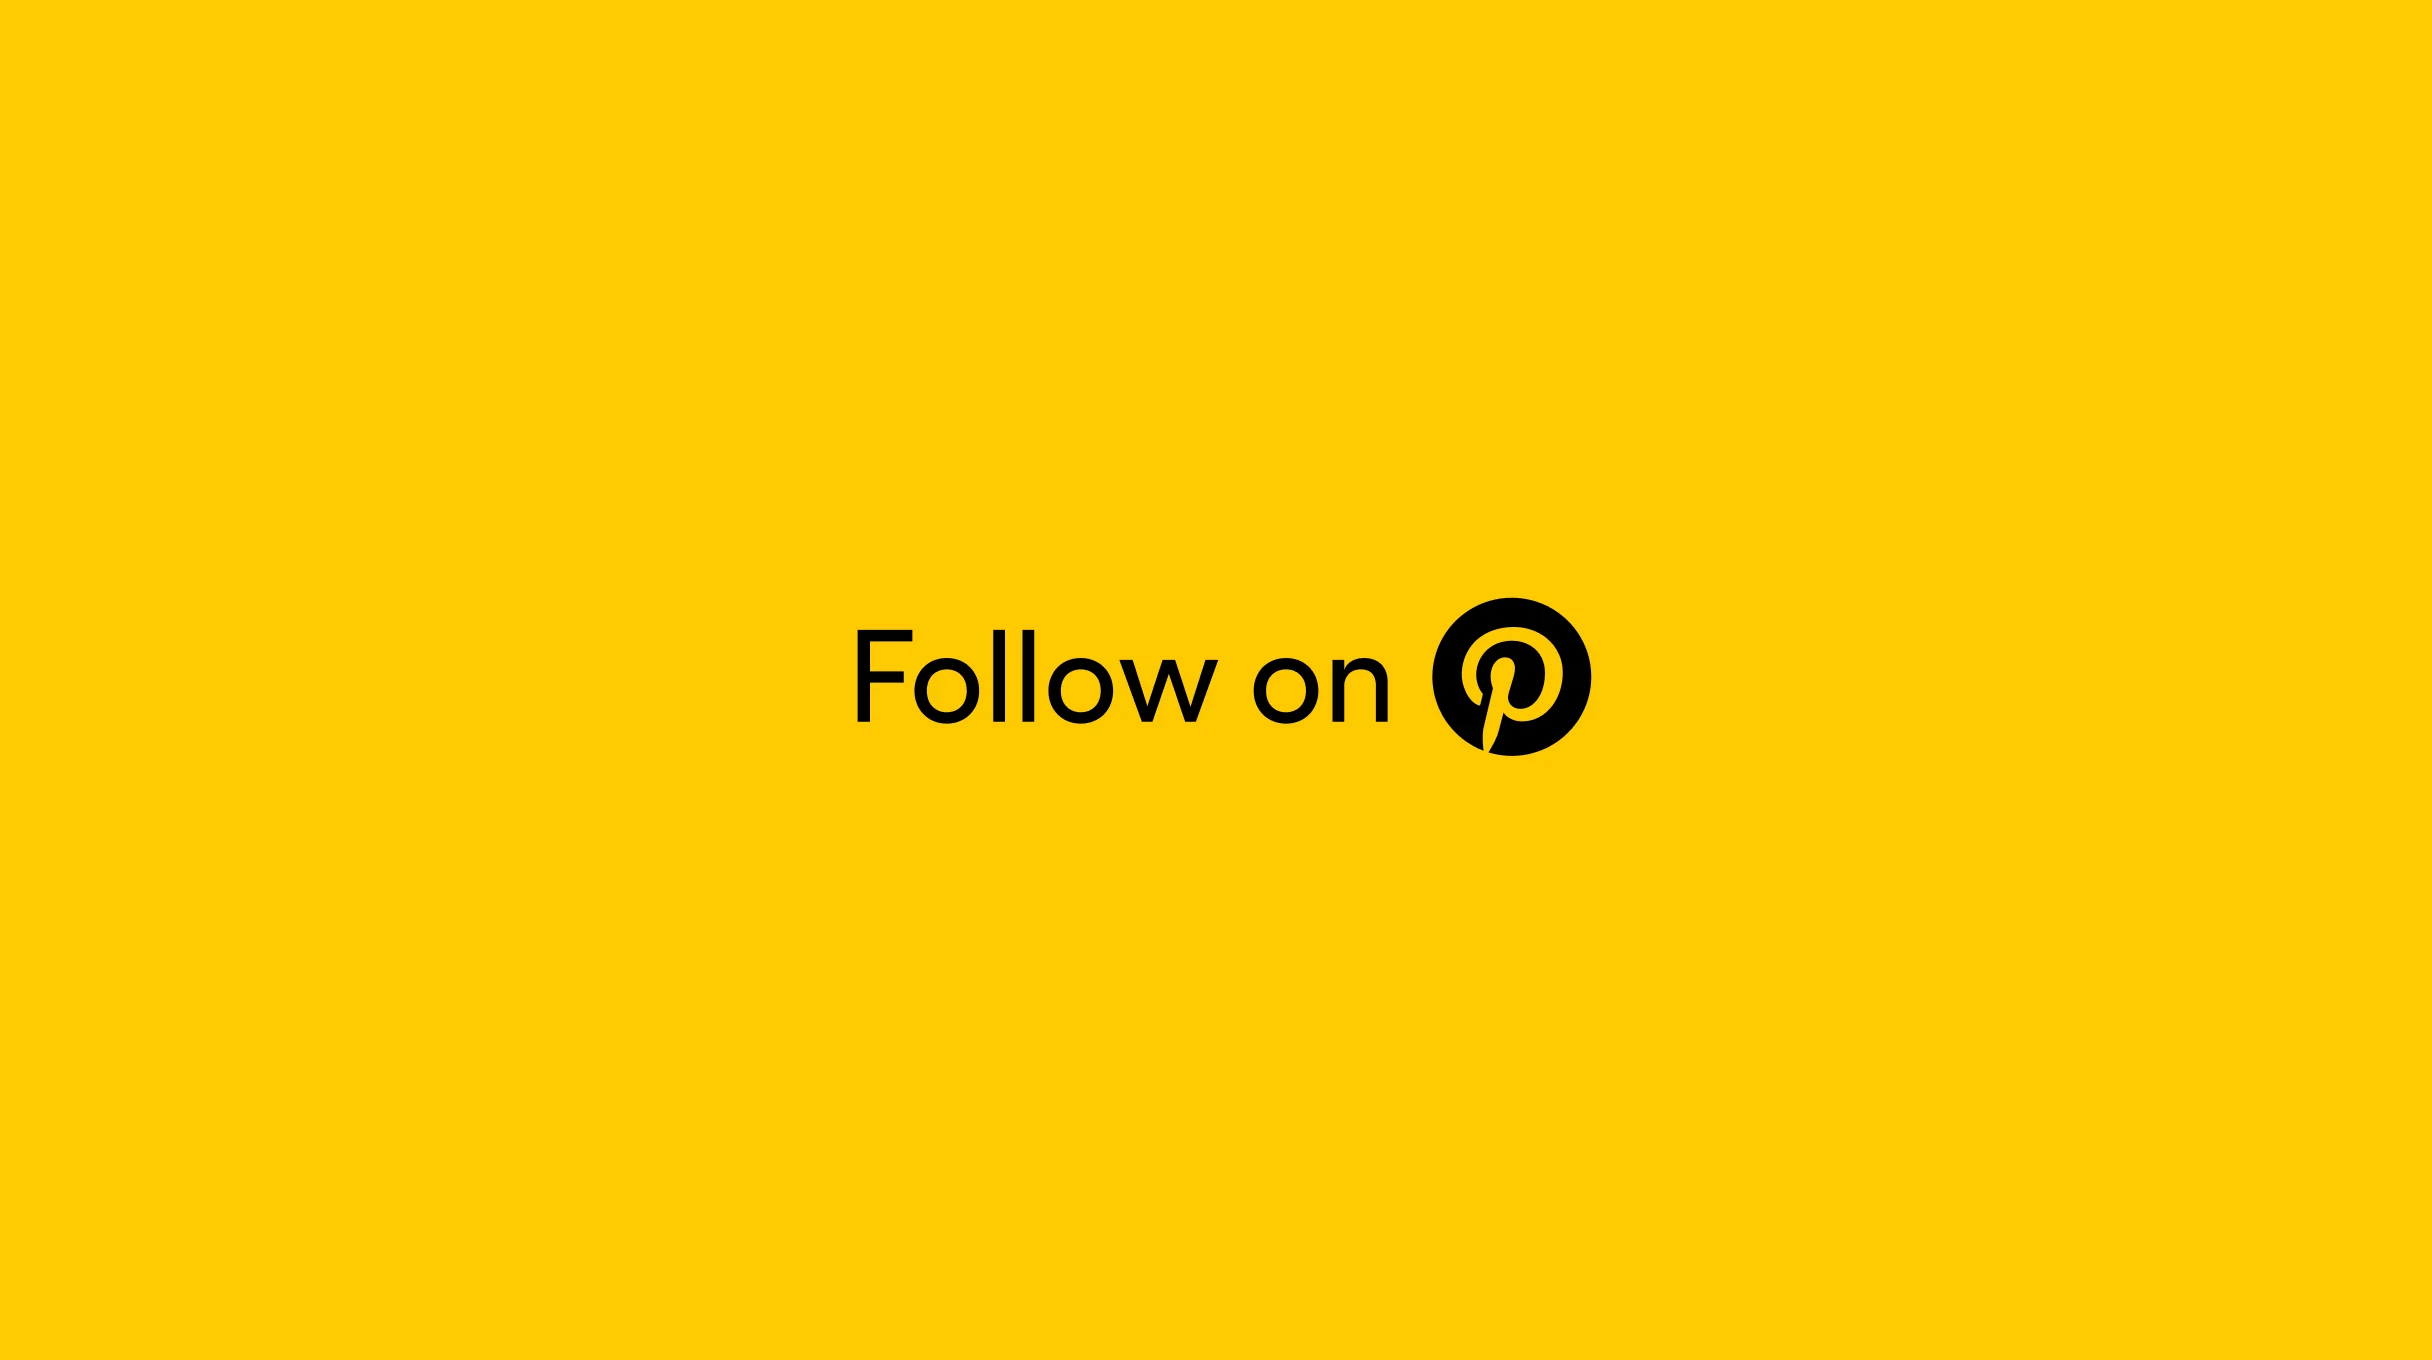 オレンジを背景にした「Follow on」の文字とブラックの円で囲んだオレンジの Pinterest ロゴ